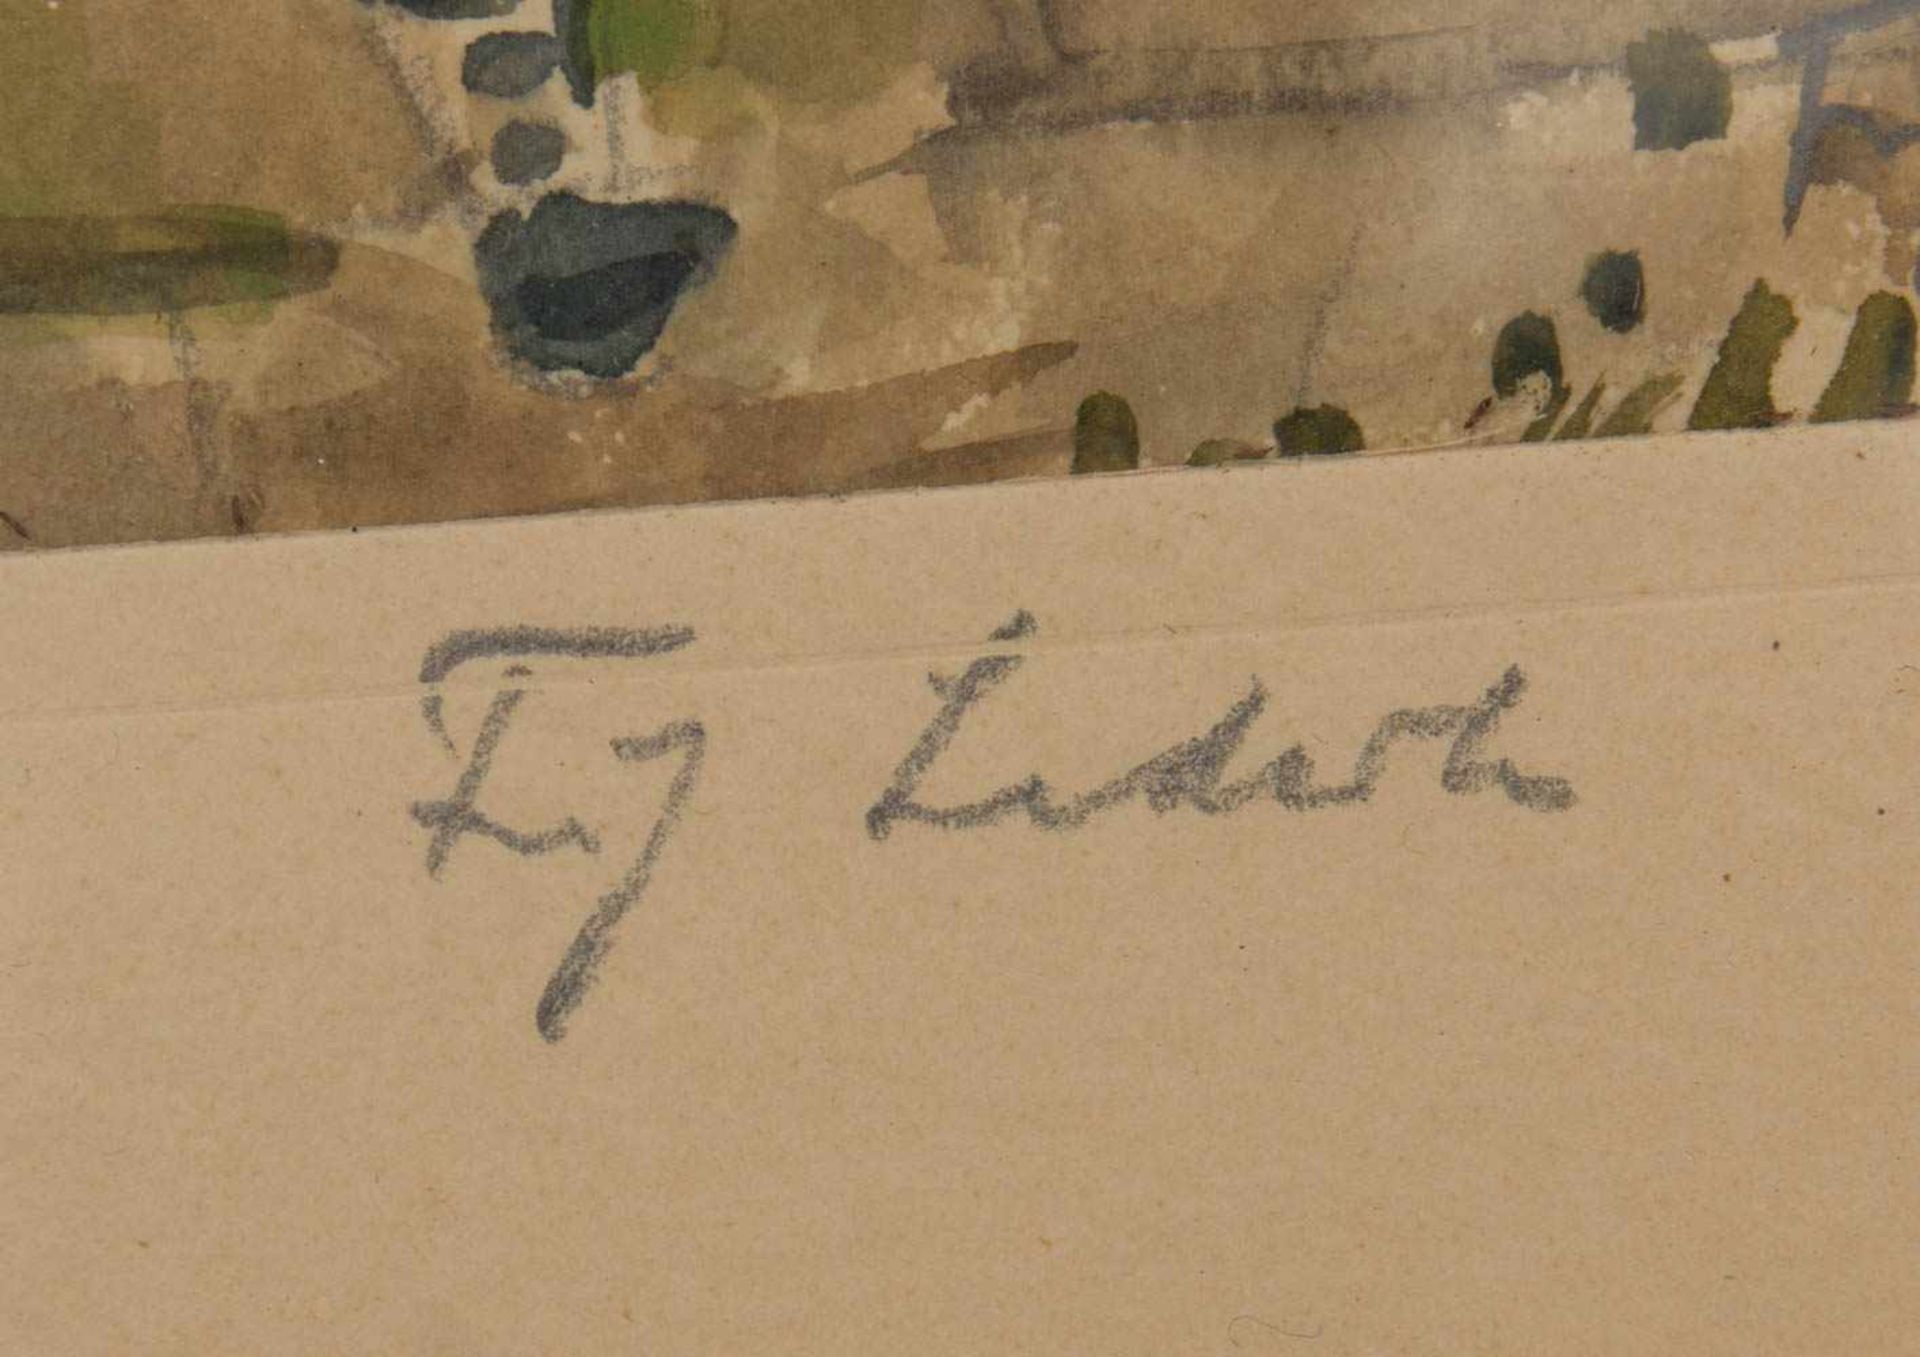 GABRIEL LORY, AM BEWALDETEN UFER, Aquarellzeichnung/Papier, hinter Glas.Gabriel Lory (1763-1840). - Bild 2 aus 3